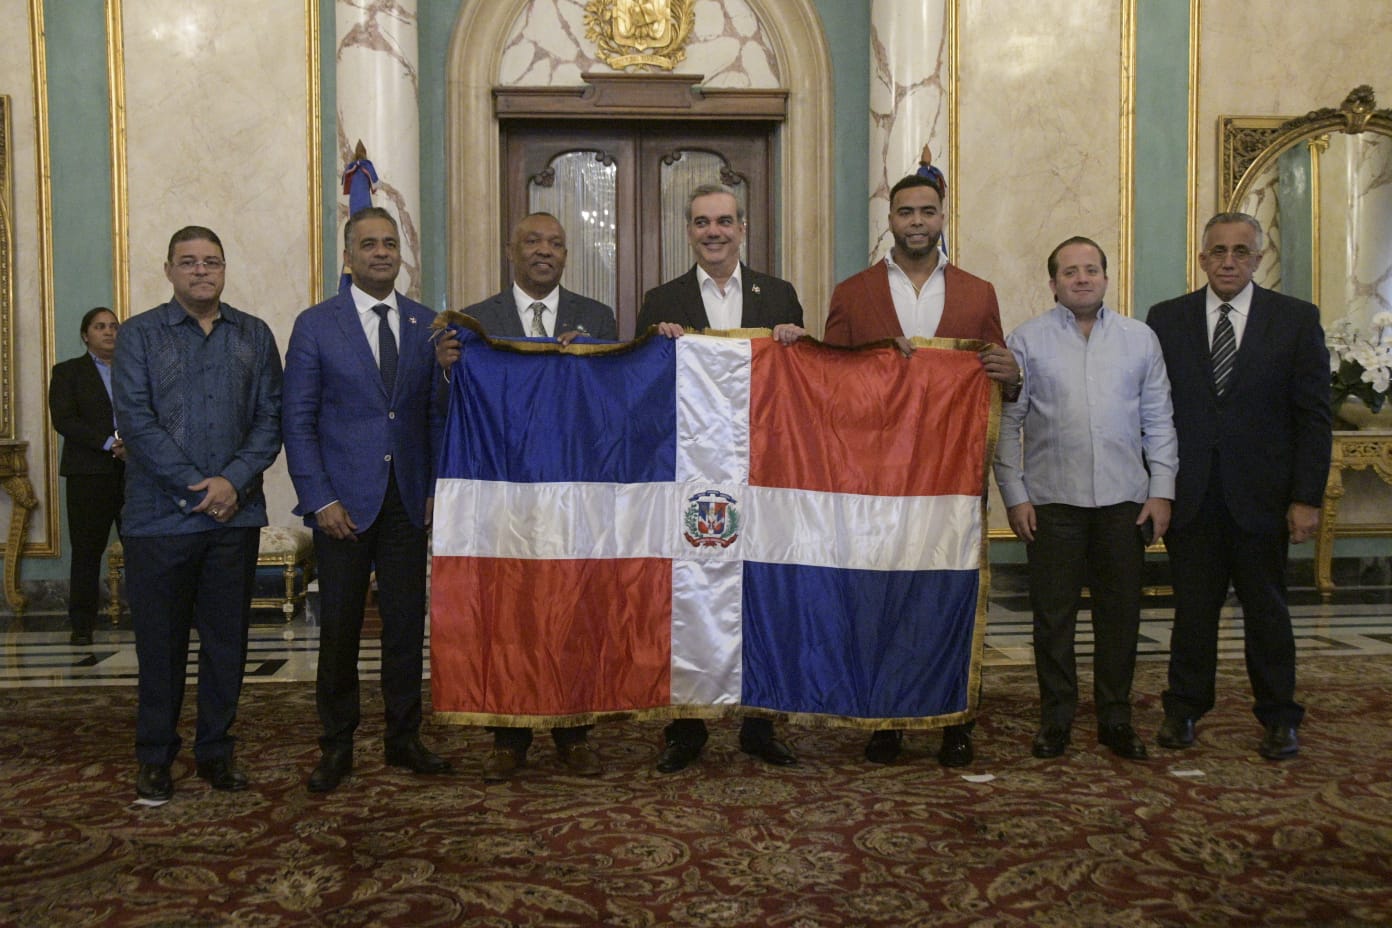 Presidente entrega bandera nacional al equipo del Clásico Mundial